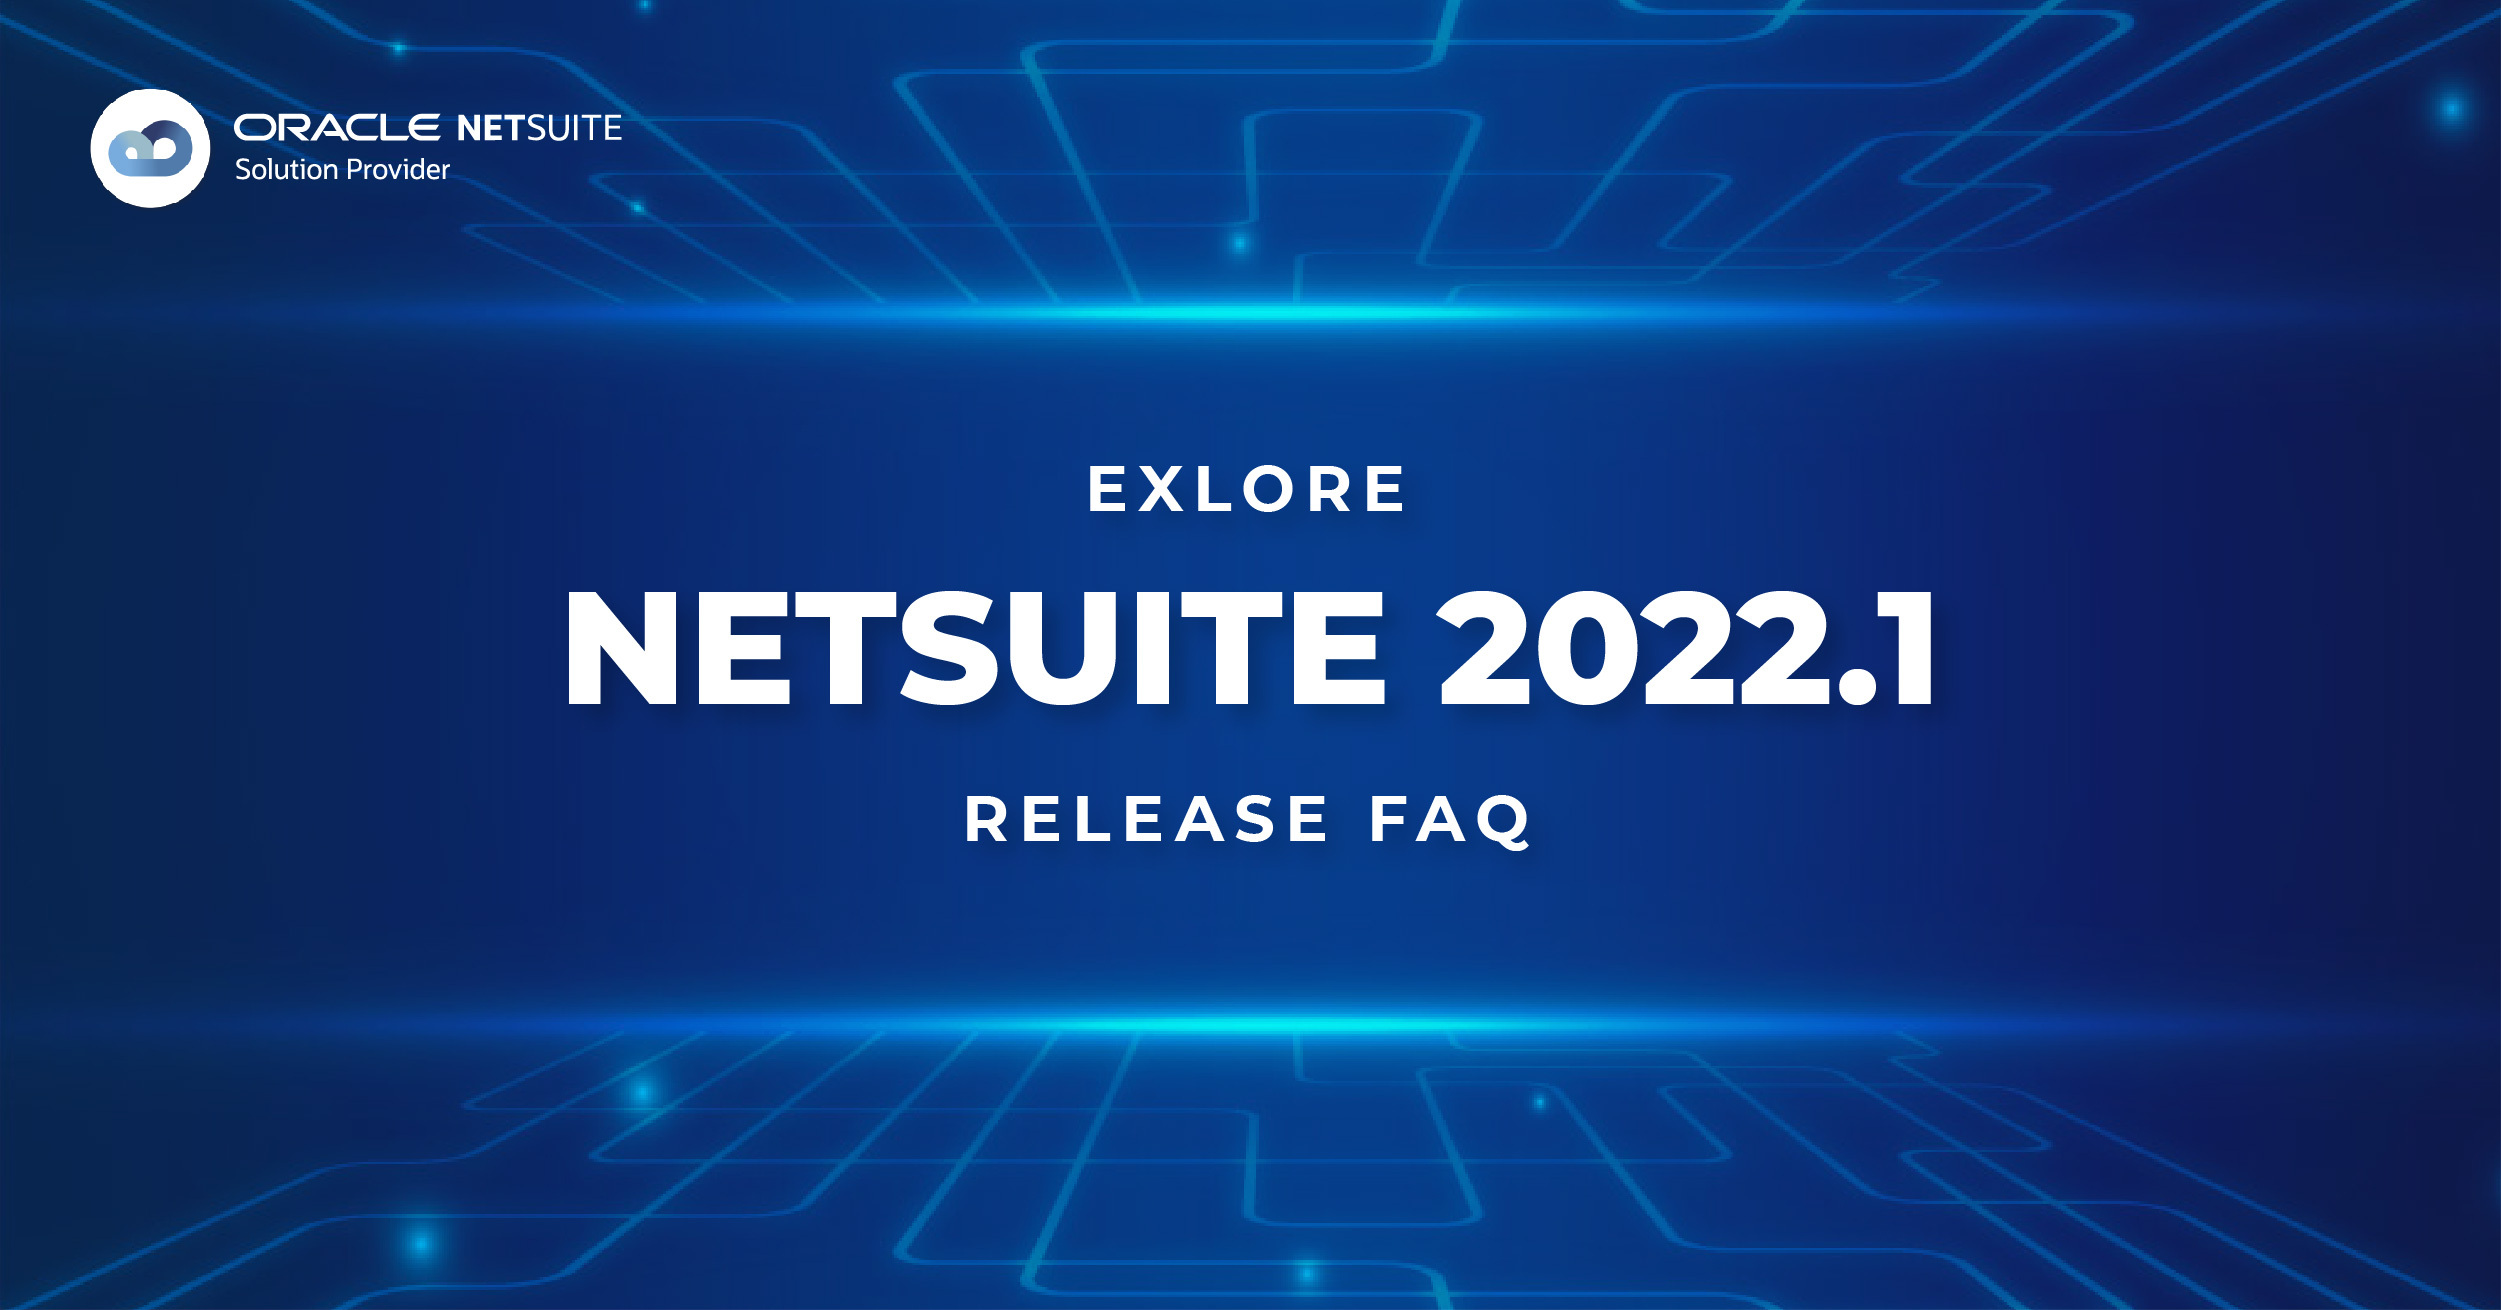 NetSuite 2022.1 FAQ